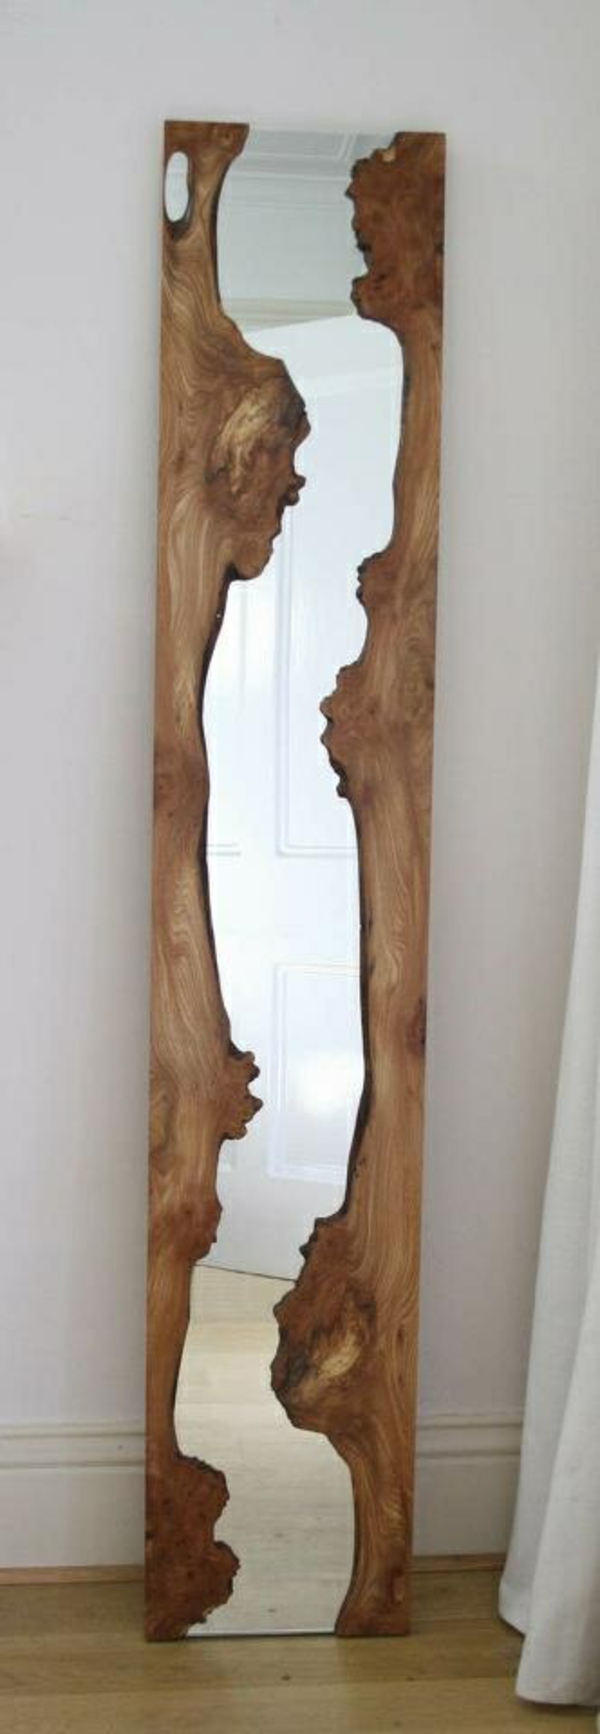 Стенна декорация дървена коридор стена огледало дървена рамка